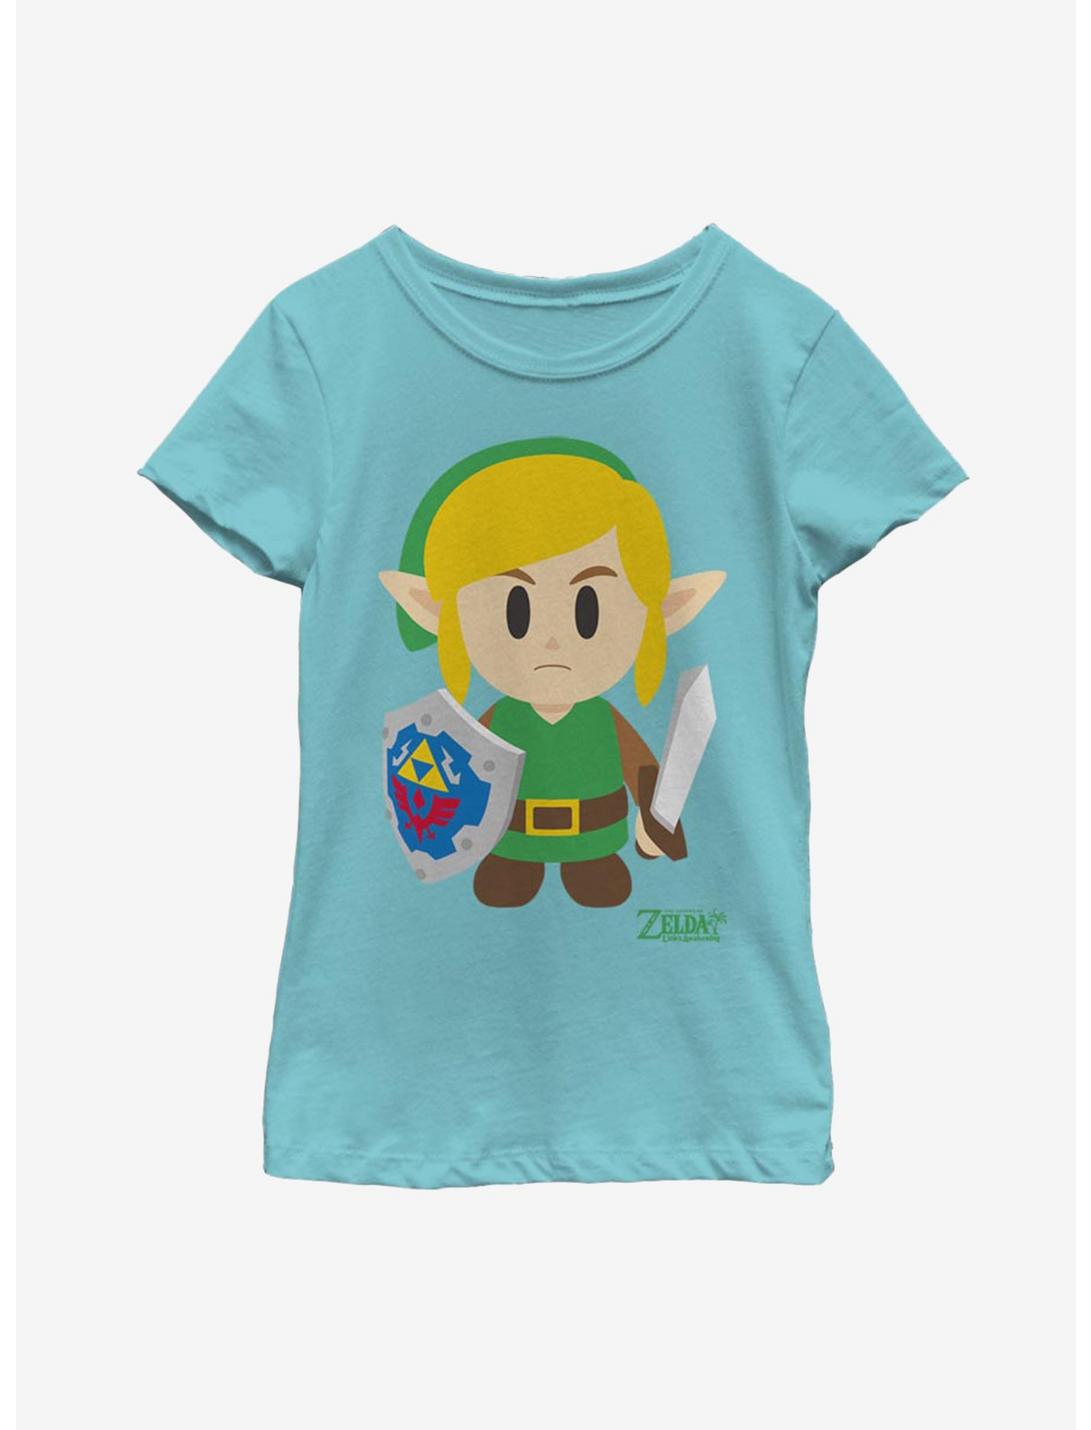 Nintendo The Legend of Zelda: Link's Awakening Link Avatar Color Youth Girls T-Shirt, TAHI BLUE, hi-res